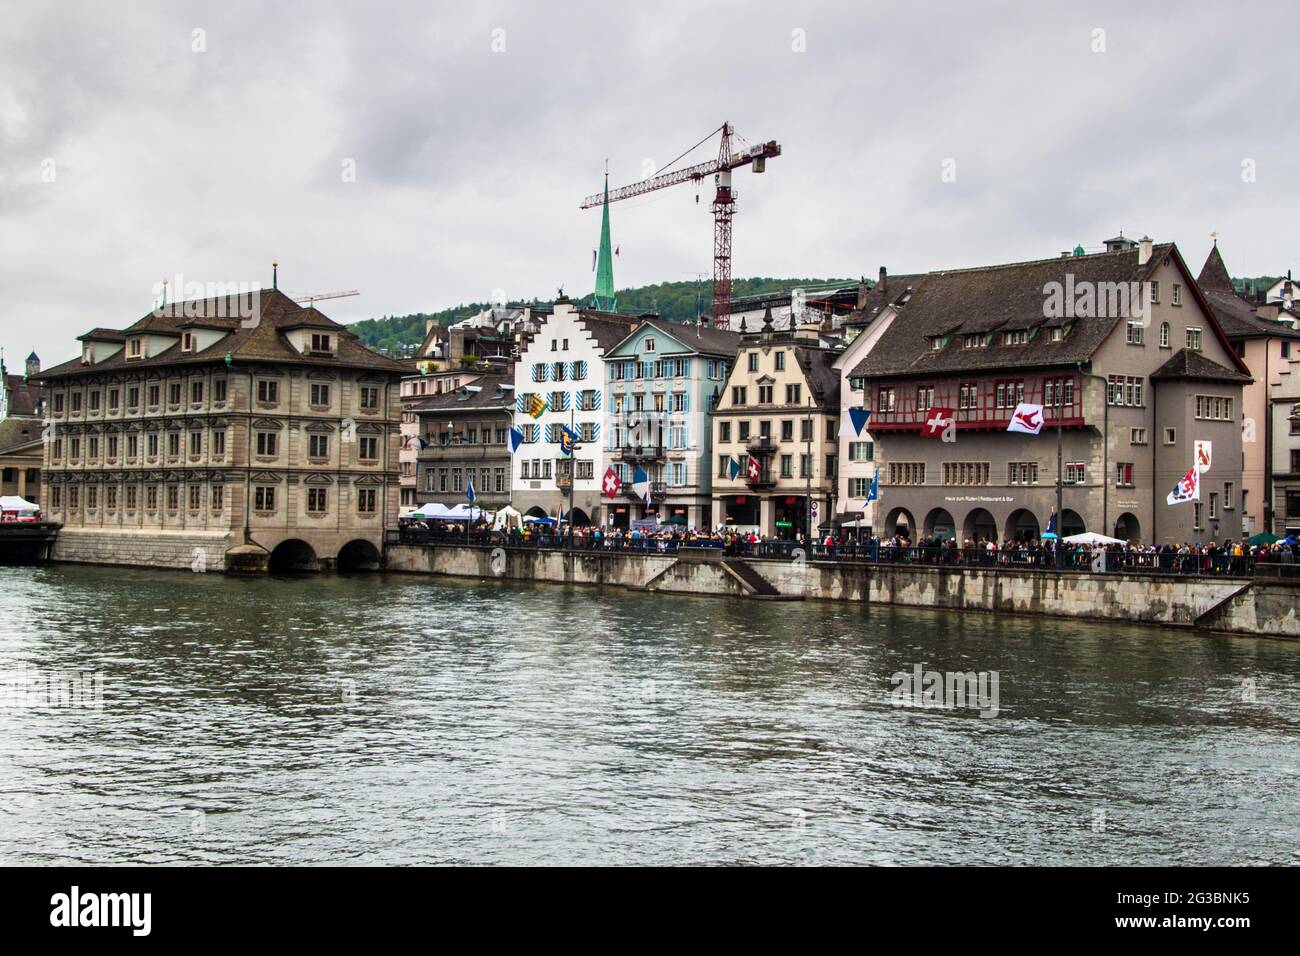 ZURICH - AVRIL 28 : vue sur une ville le 28 avril 2014 à Zurich, Suisse. Zurich est la plus grande ville de Suisse et la capitale du canton de Banque D'Images